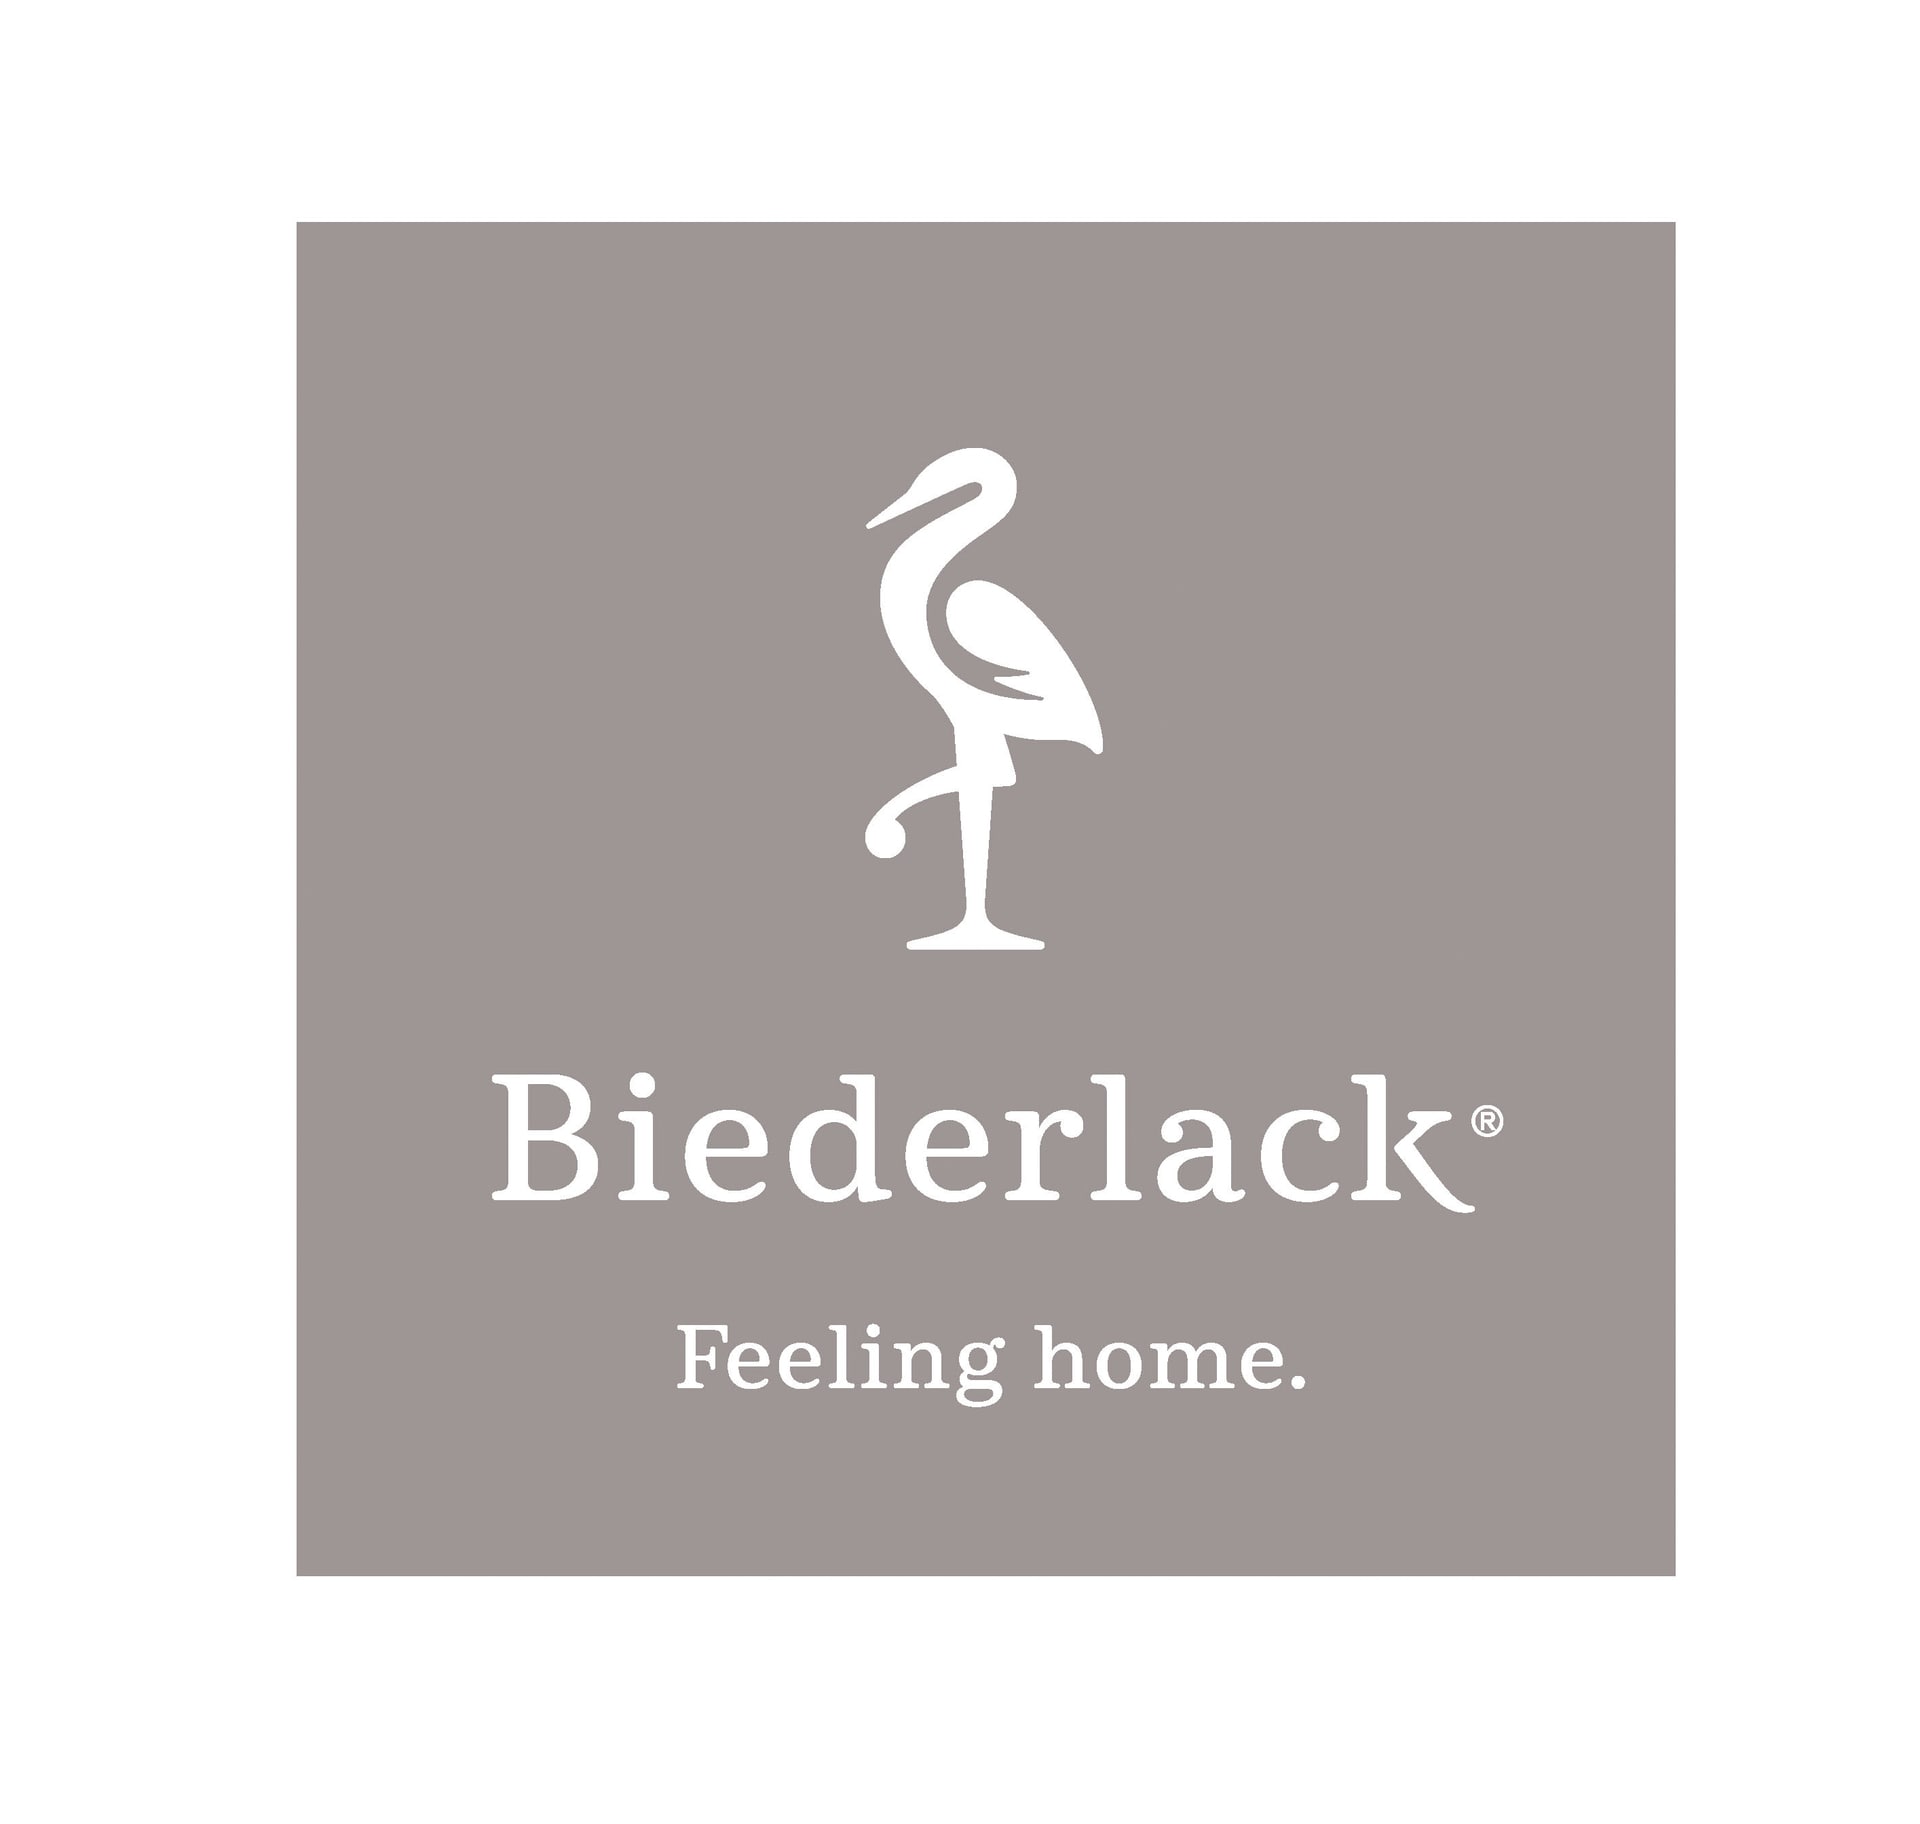 Biederlack Feeling Home-logo